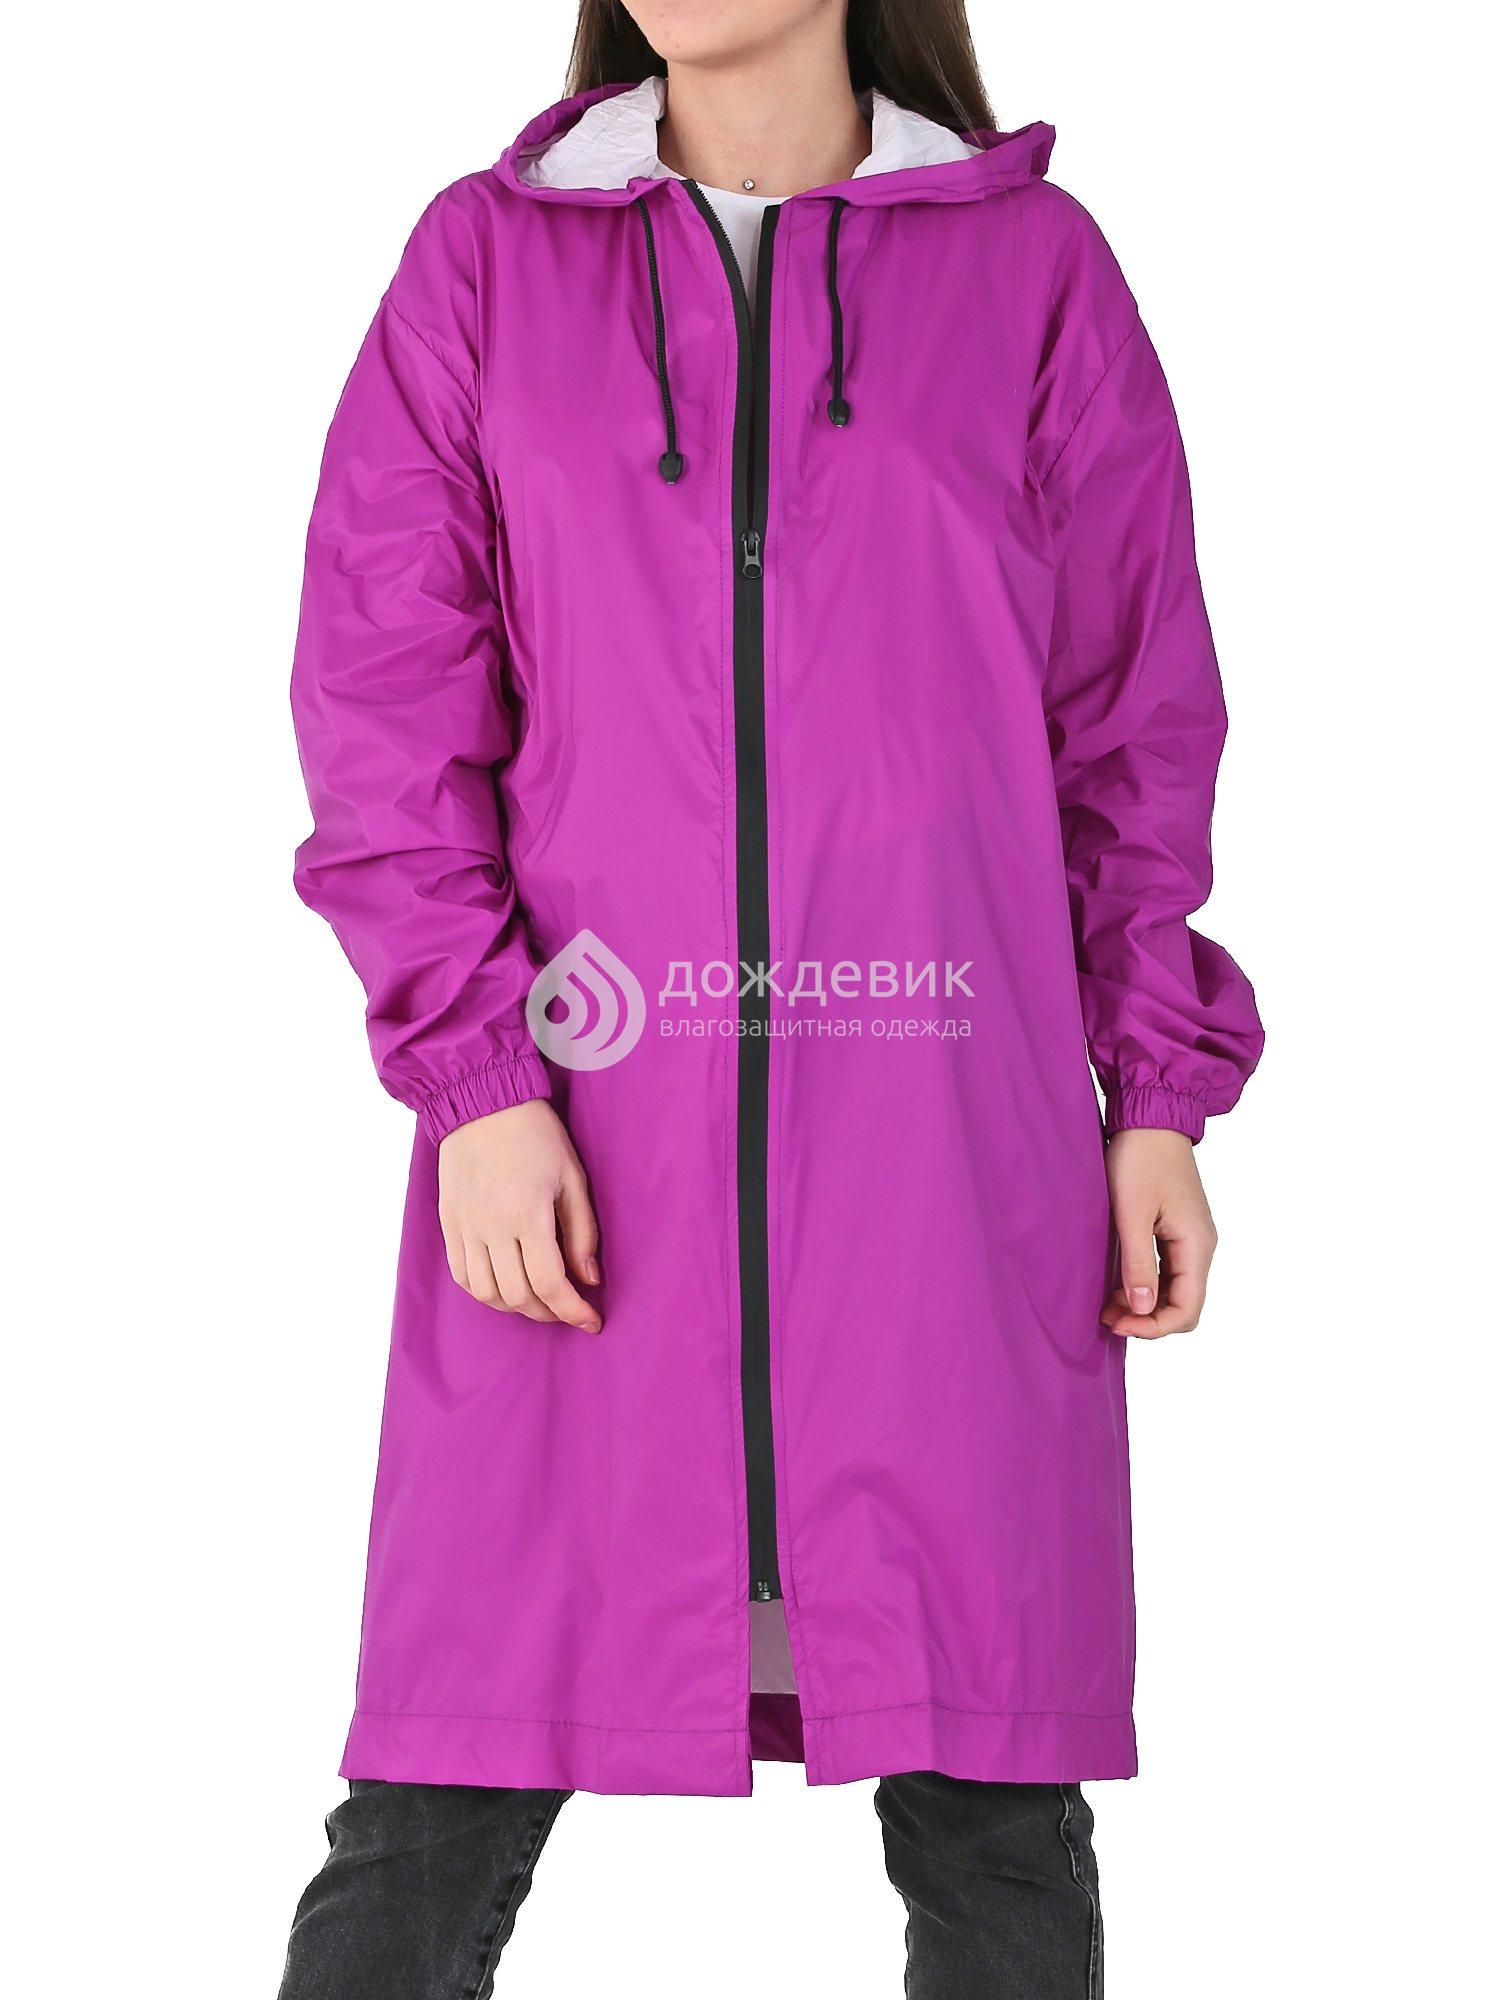 Плащ-дождевик «Ультра» модный непромокаемый на молнии фиолетовый